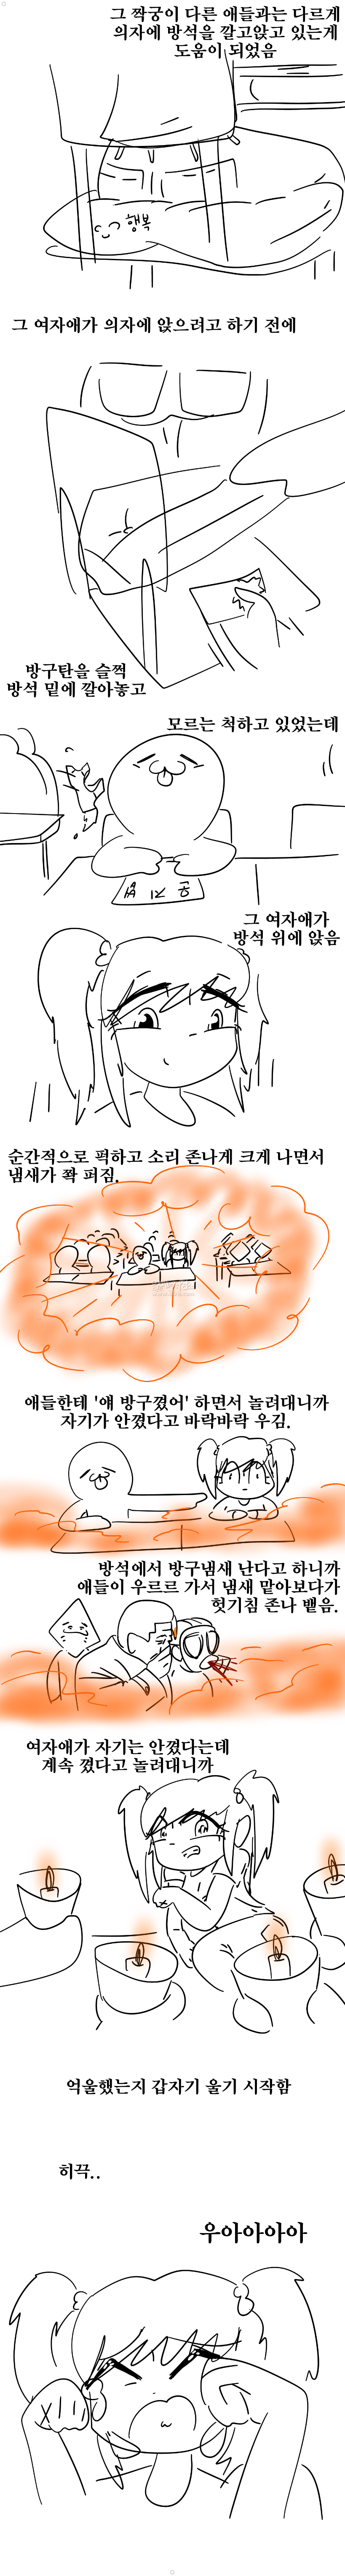 흔한 방구탄으로 처자애 울린 썰만화 ㅎㅎ 이미지 #2